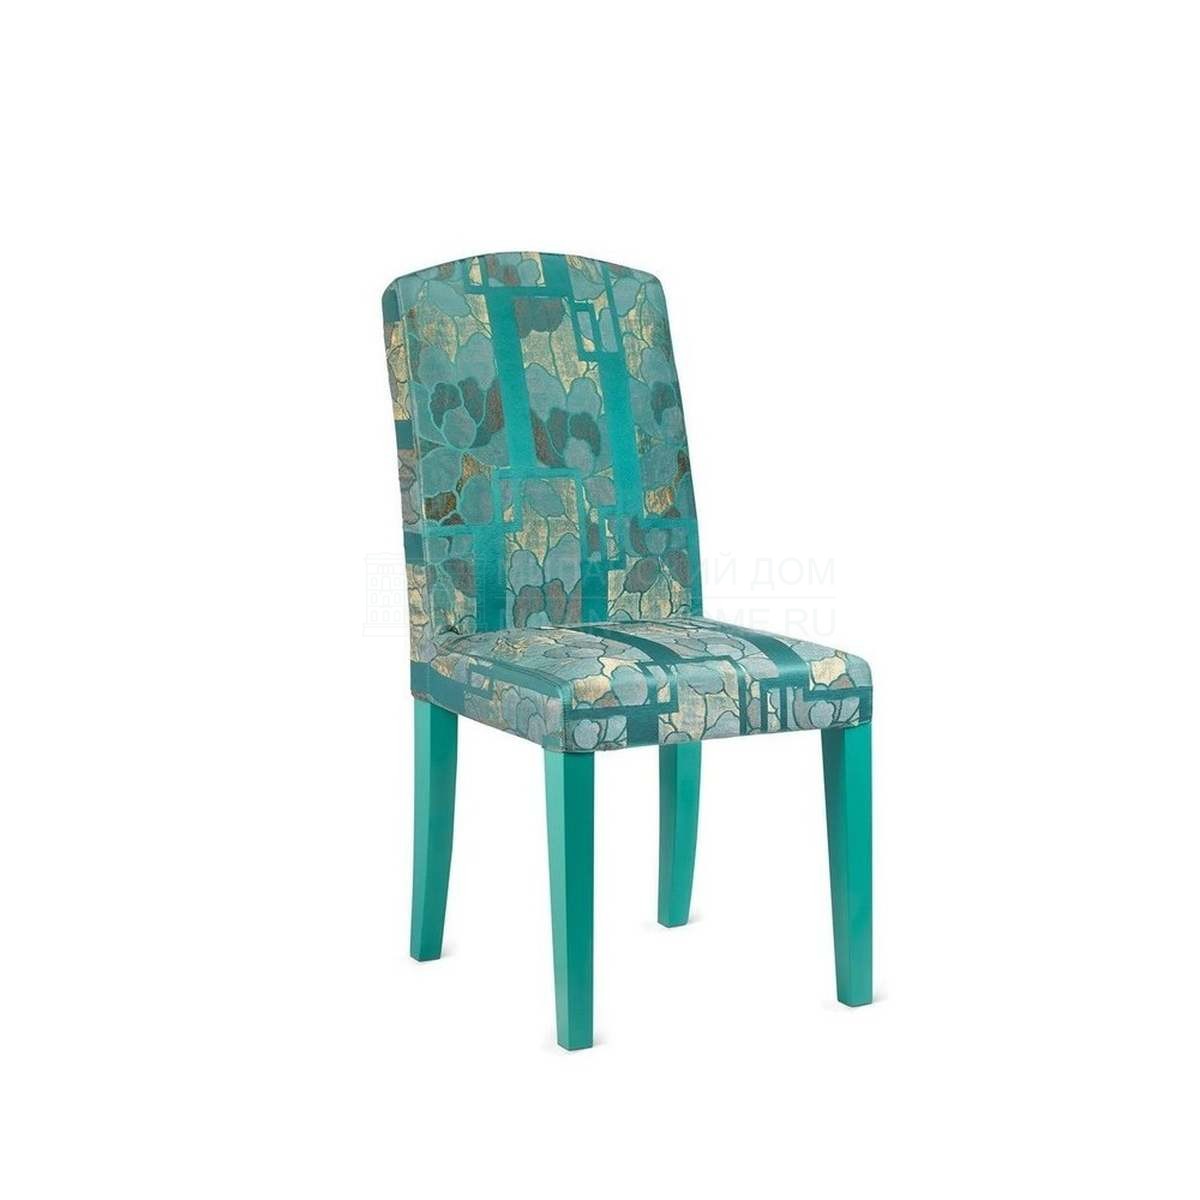 Стул Dalia chair without armrests из Италии фабрики ARMANI CASA